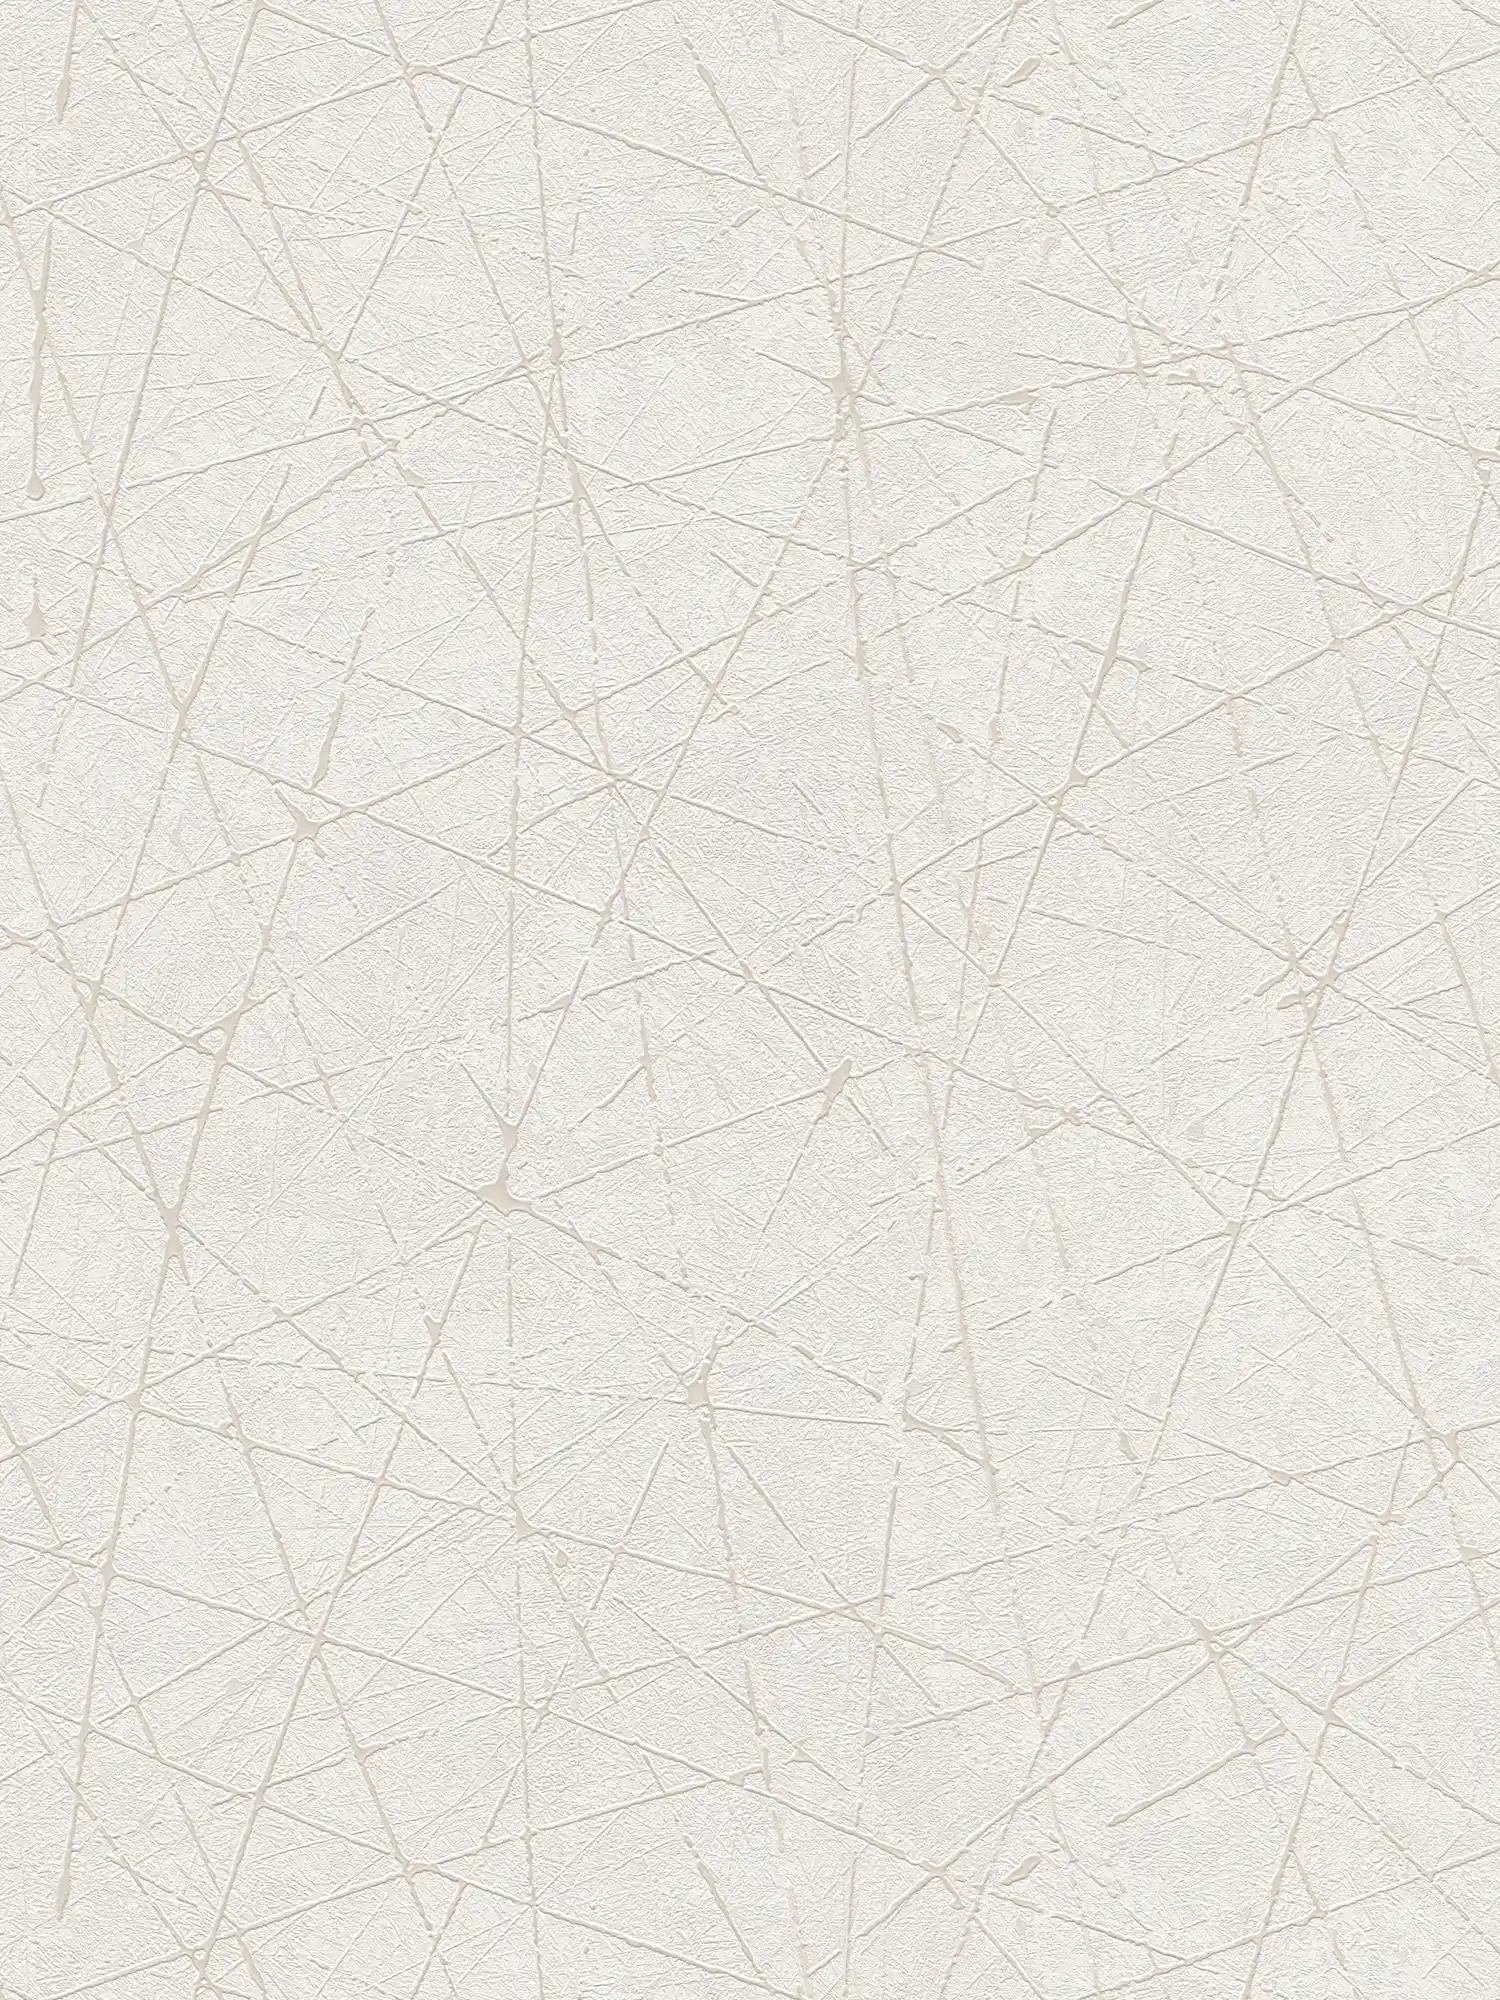         Vliesbehang met grafisch lijnenspel - wit, crème, zilver
    